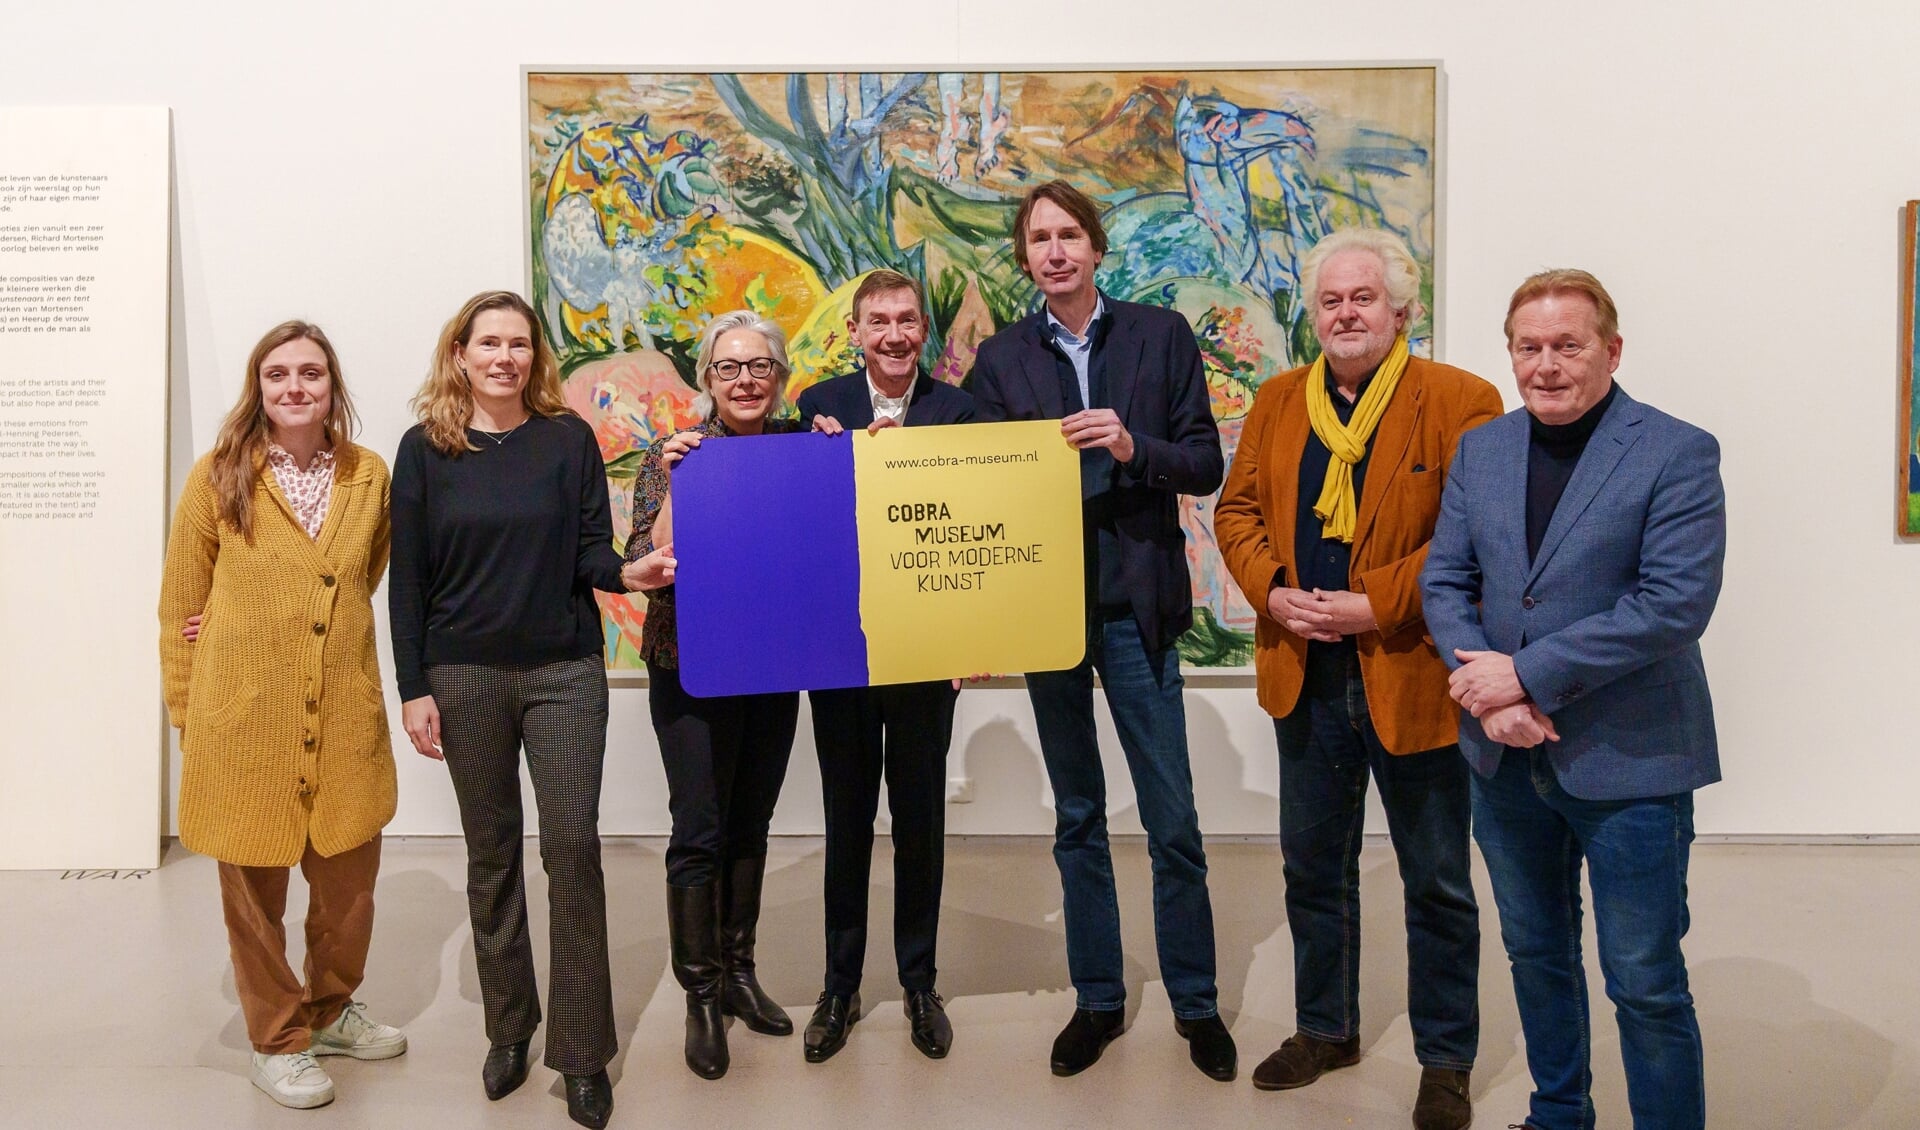 De presentatie van de Cobra Pas Amstelveen op 1 februari in het bijzijn van gemeenteaadsleden met in het midden Stefan van Raay (directeur Cobra Museum) en wethouder Herbert Raat (Kunst en Cultuur).